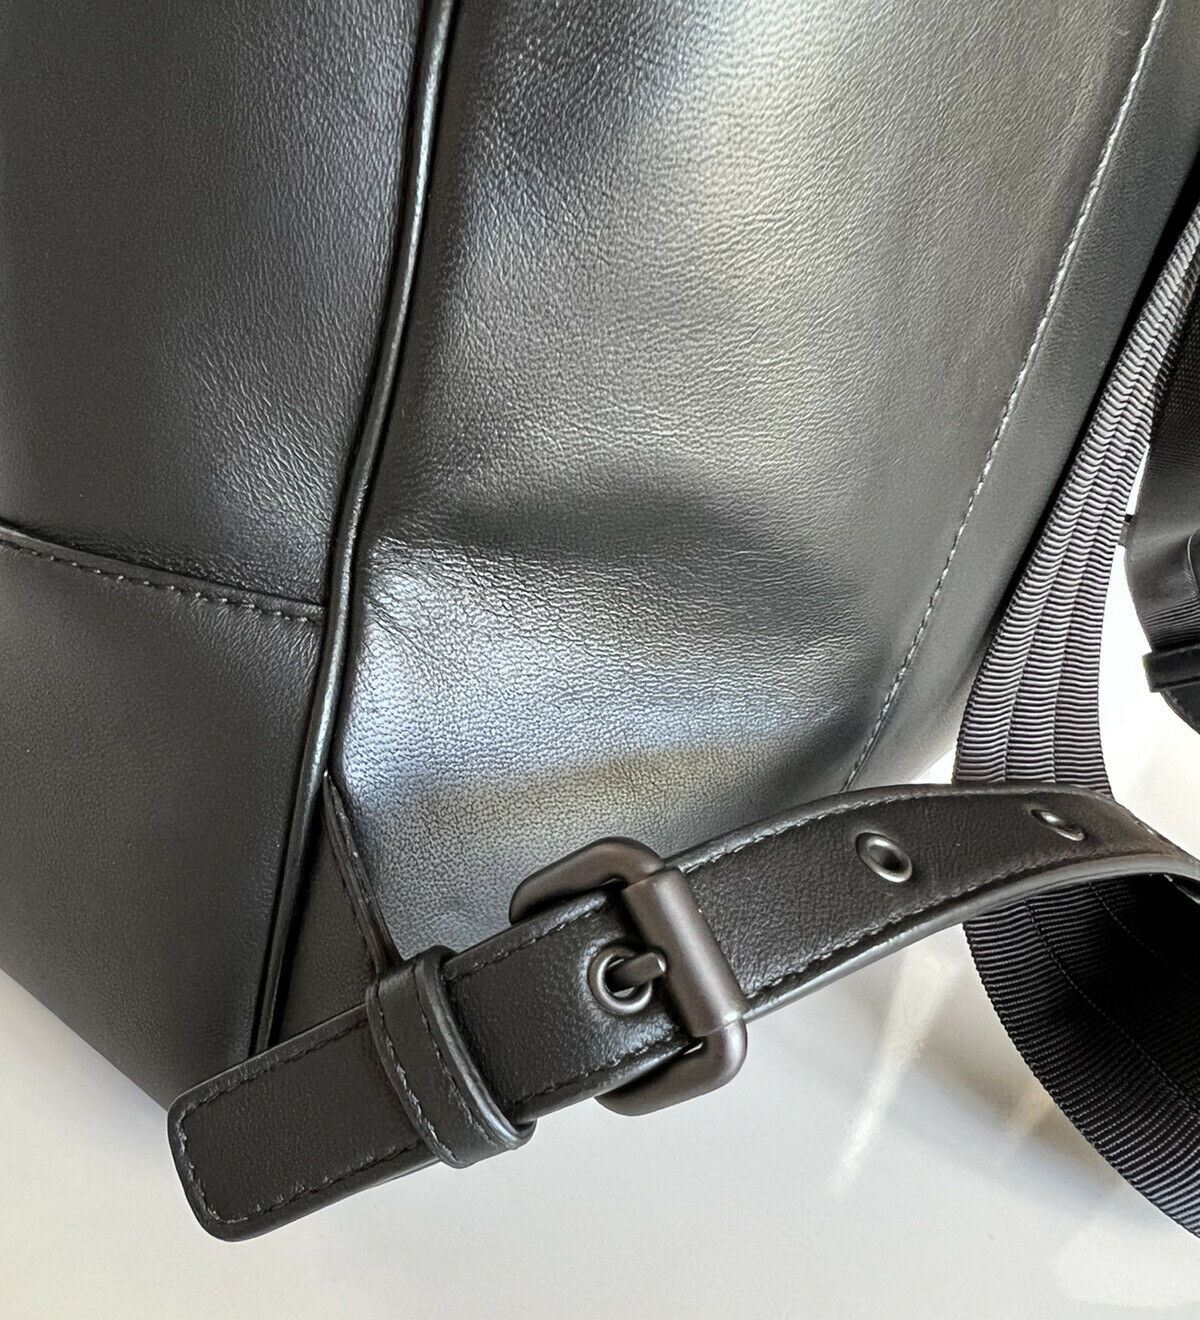 NWT $3100 Черный кожаный рюкзак Intrecciato Bottega Veneta, сделано в Италии 498976